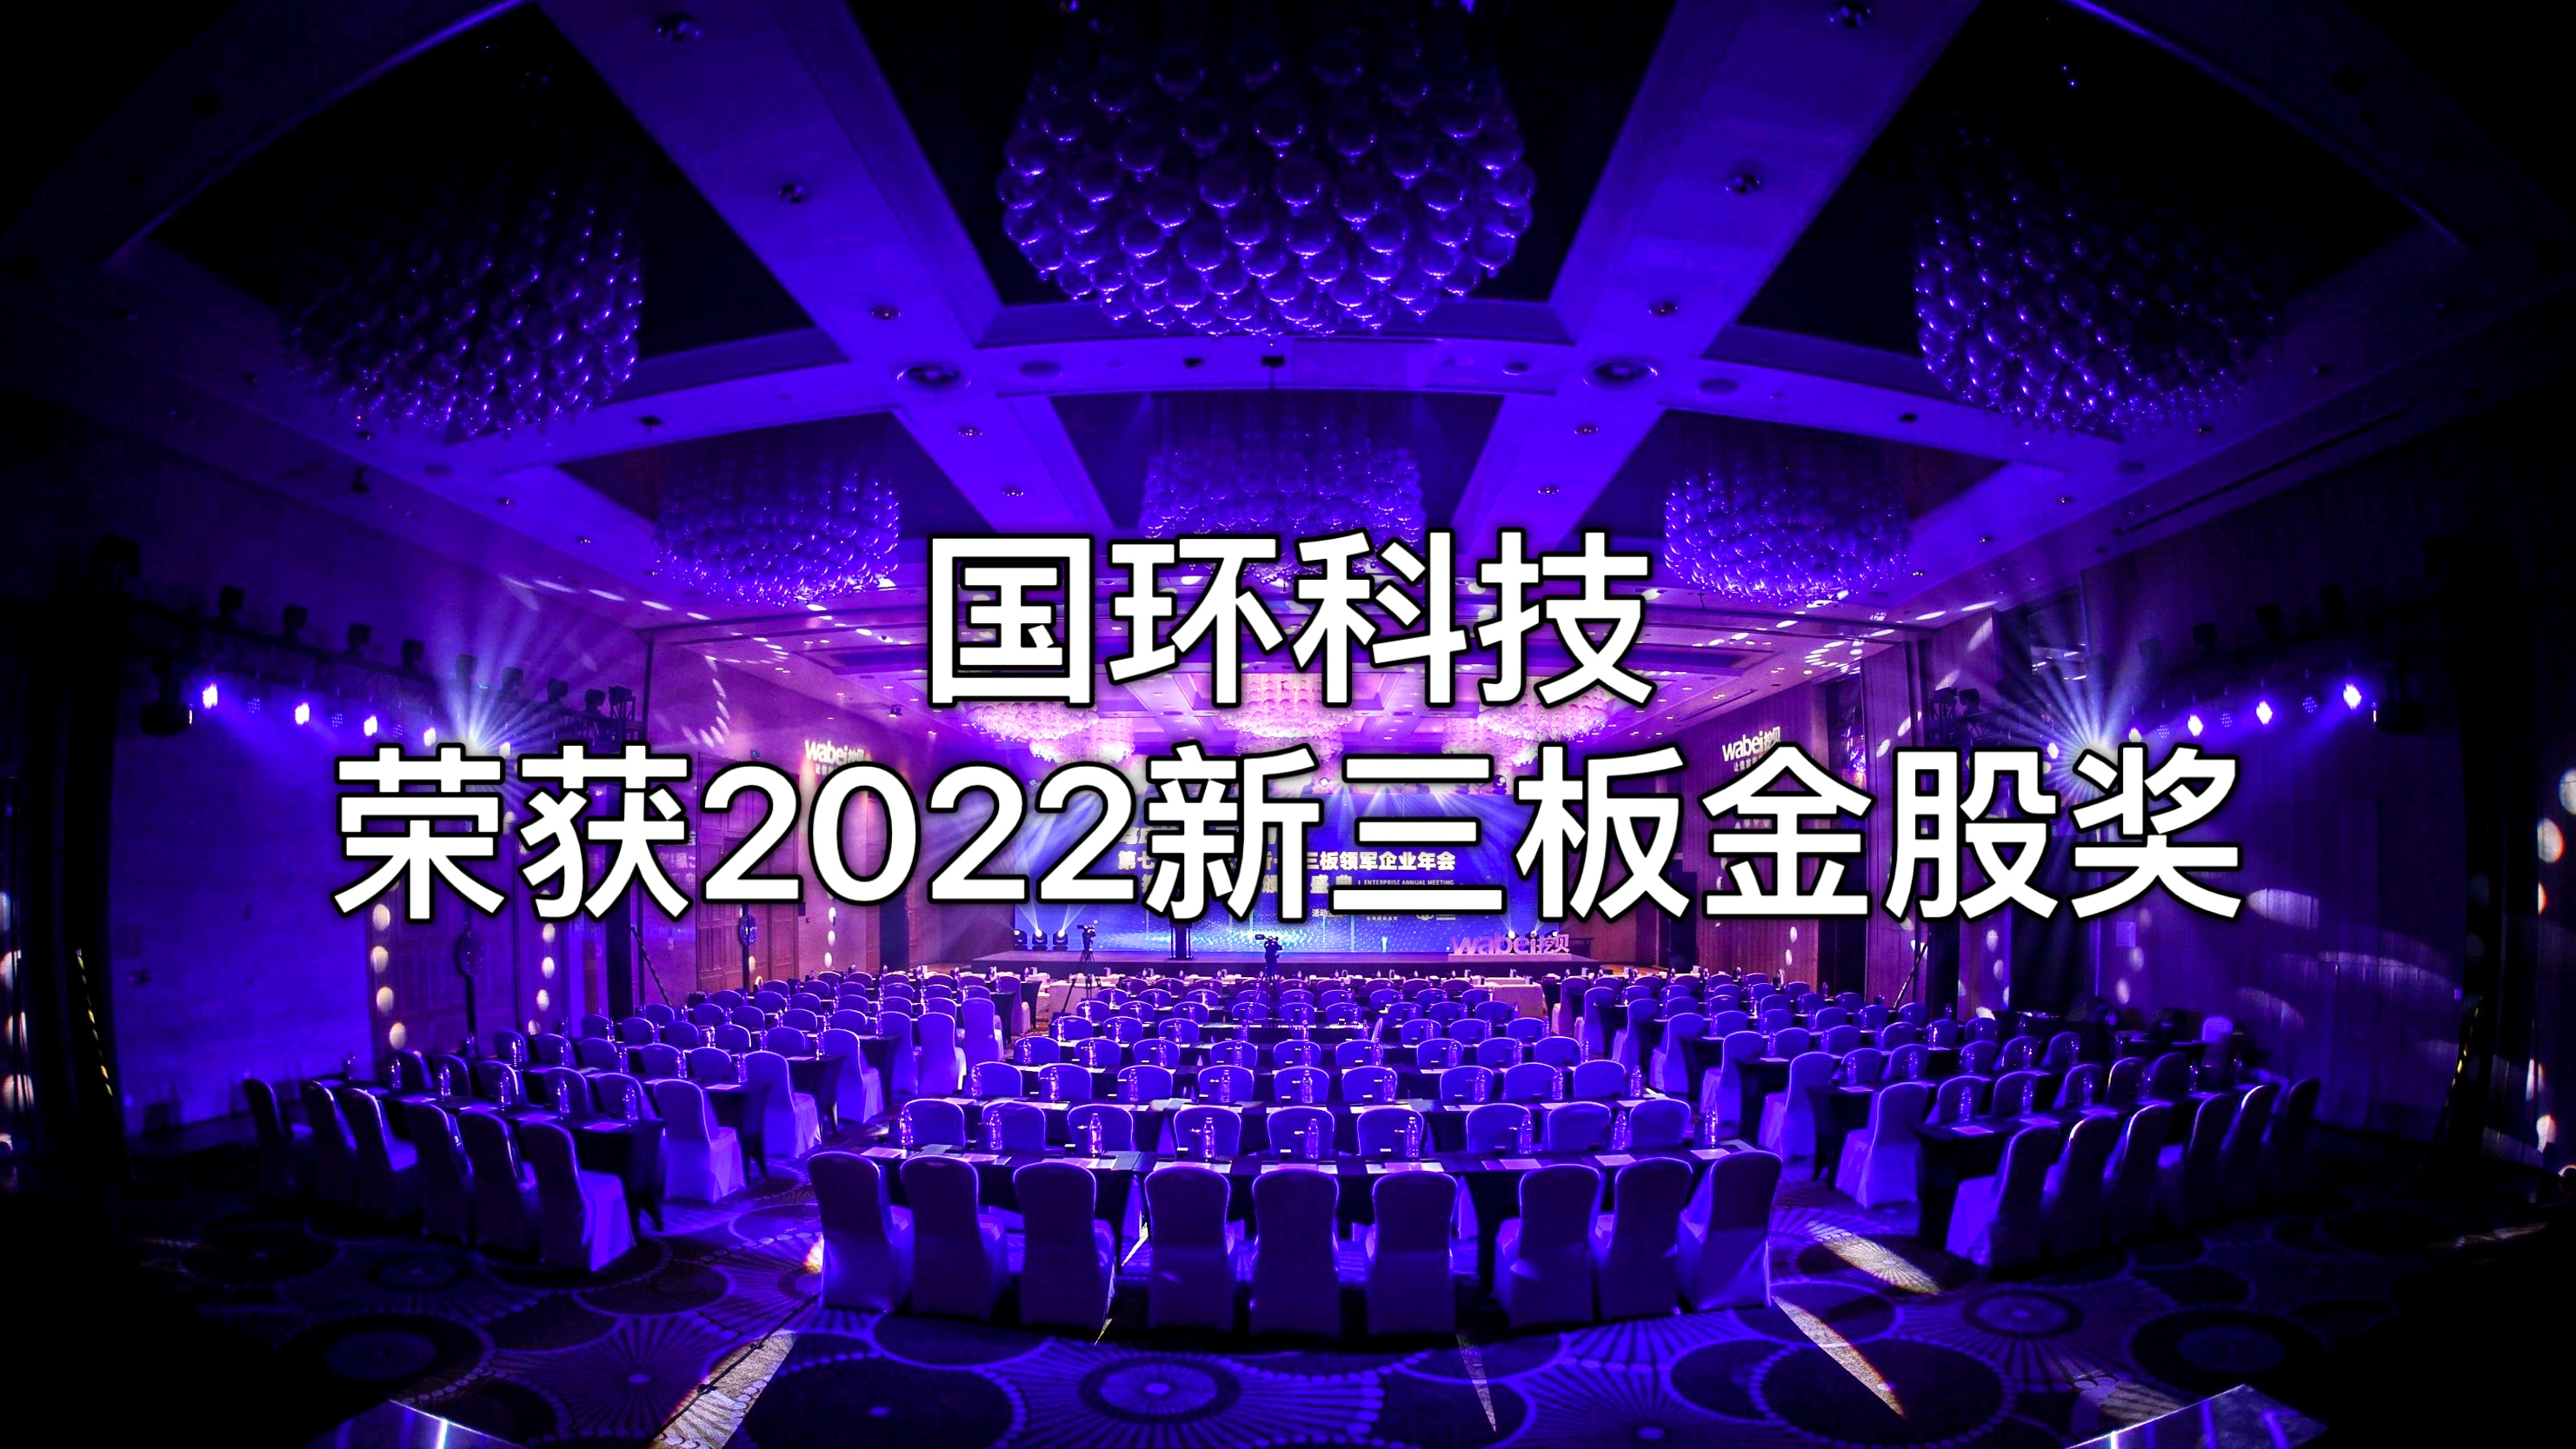 北京国环莱茵环保科技股份有限公司荣获“2022新三板金股奖”